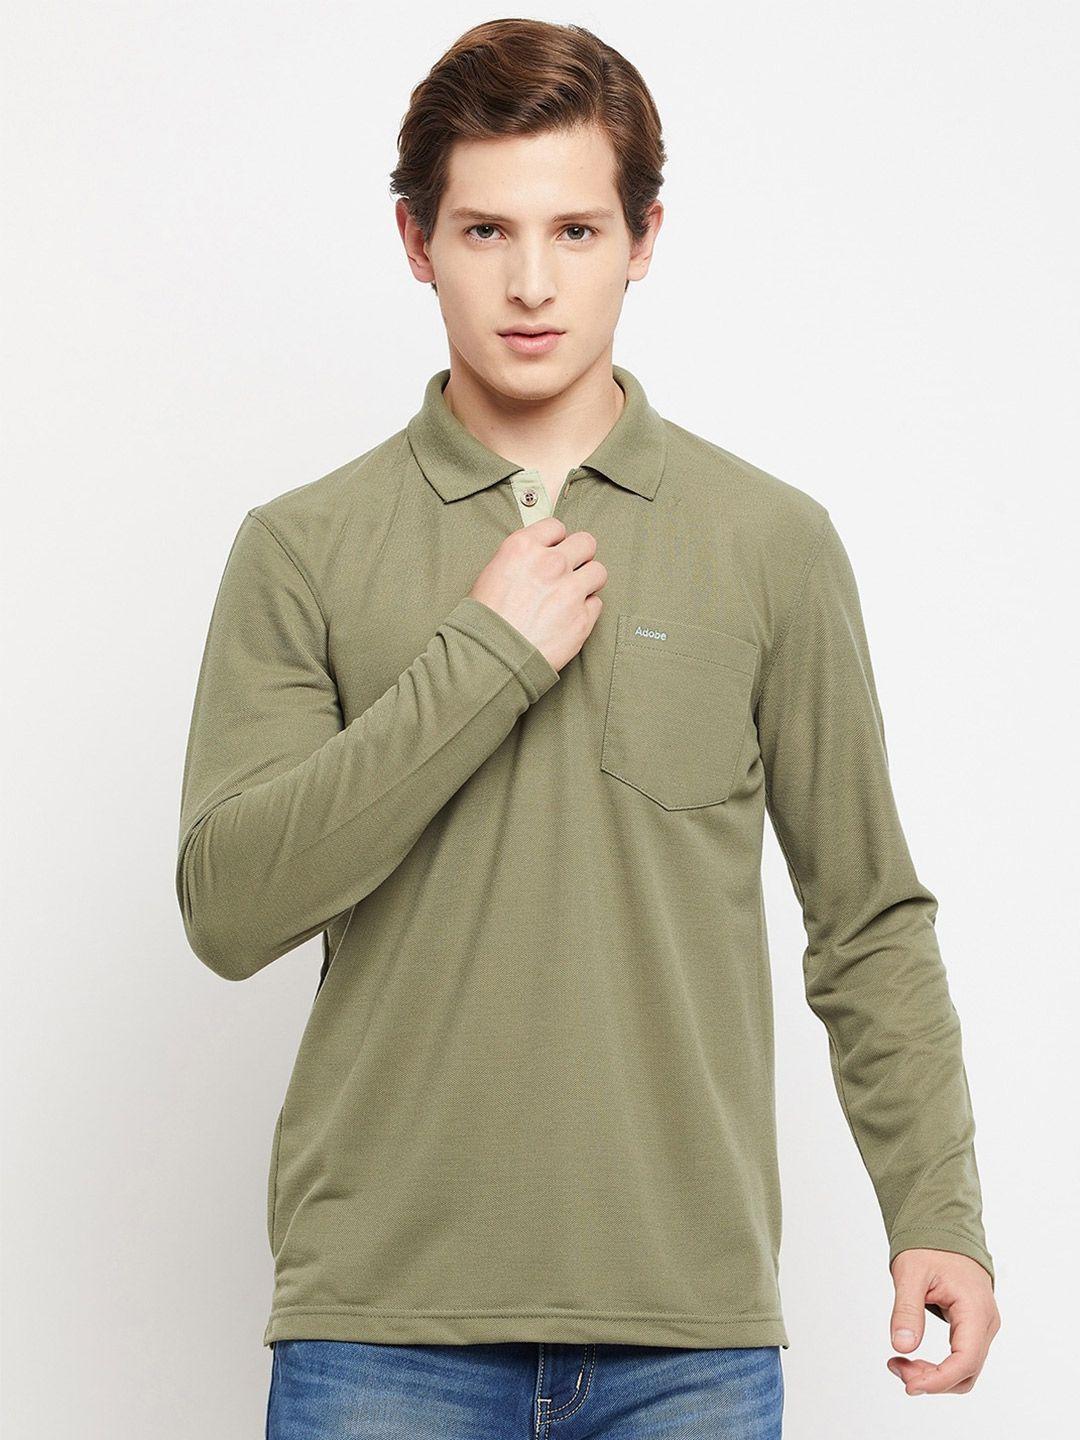 Adobe Men Green Polo Collar T-shirt